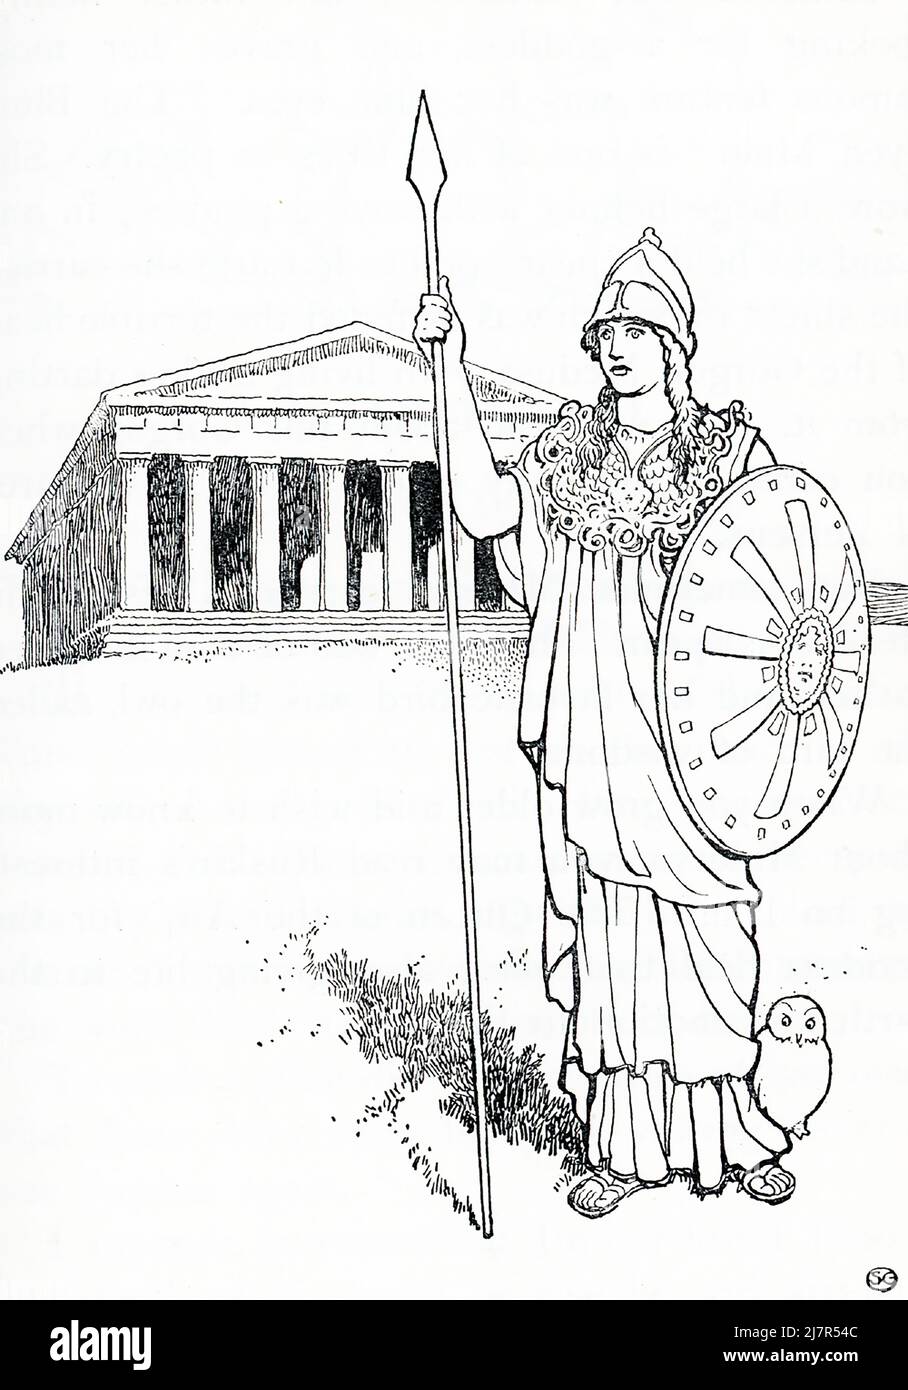 Dans la mythologie grecque et romaine, Athéna, également orthographié Athéne, était la déesse olympique de la sagesse et du bon conseil, de la guerre, de la défense des villes, de l'effort héroïque, du tissage, de la poterie et de divers autres métiers. Son symbole était la chouette. Elle était représentée comme une femme majestueuse armée d'un bouclier et d'une lance, et portant une longue robe, une barre à crête et le célèbre aiguis, un cap taillé par un serpent orné du visage monstrueux de la Gorgon Medusa Banque D'Images